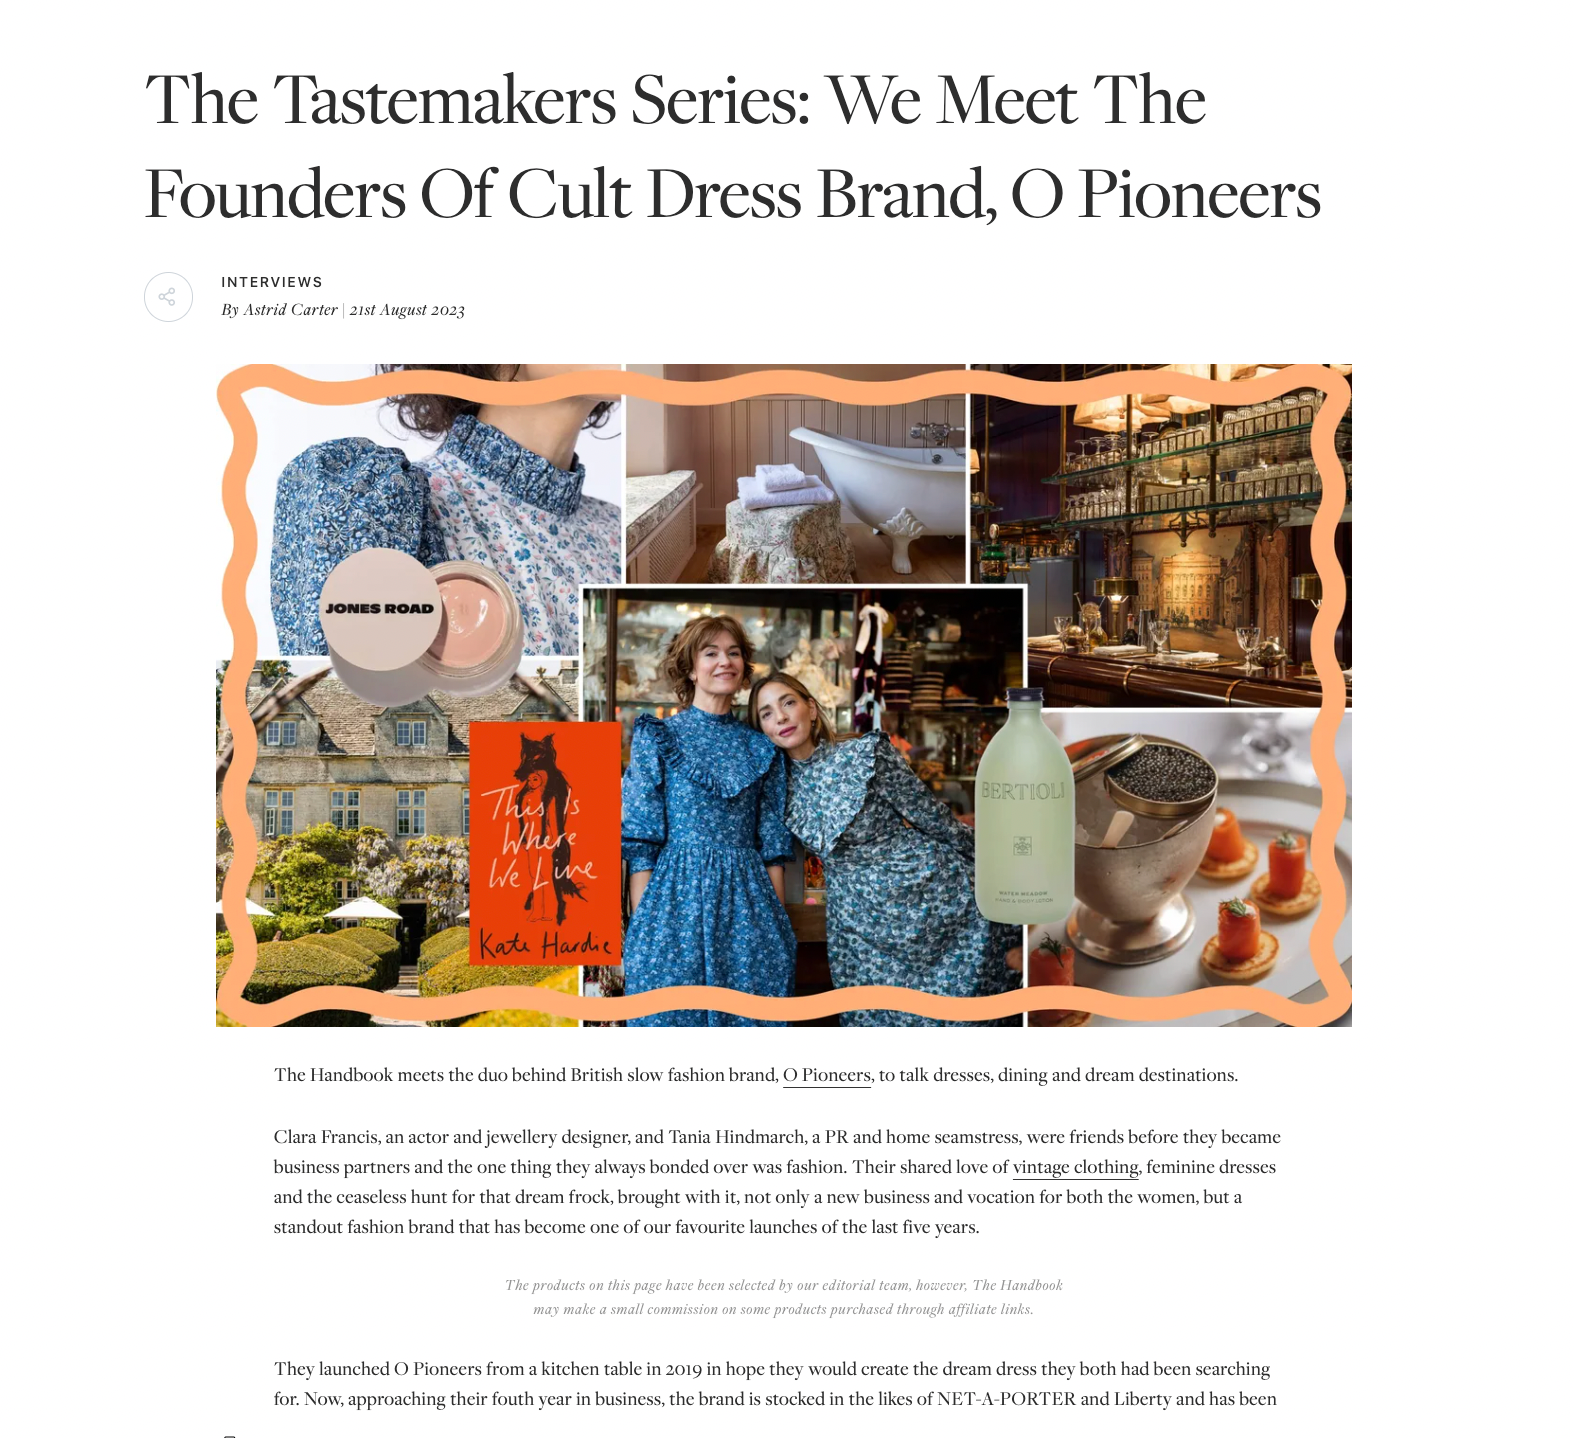 The Handbook - The Tastemakers Series: We Meet The Founders Of Cult Dress Brand, O Pioneers